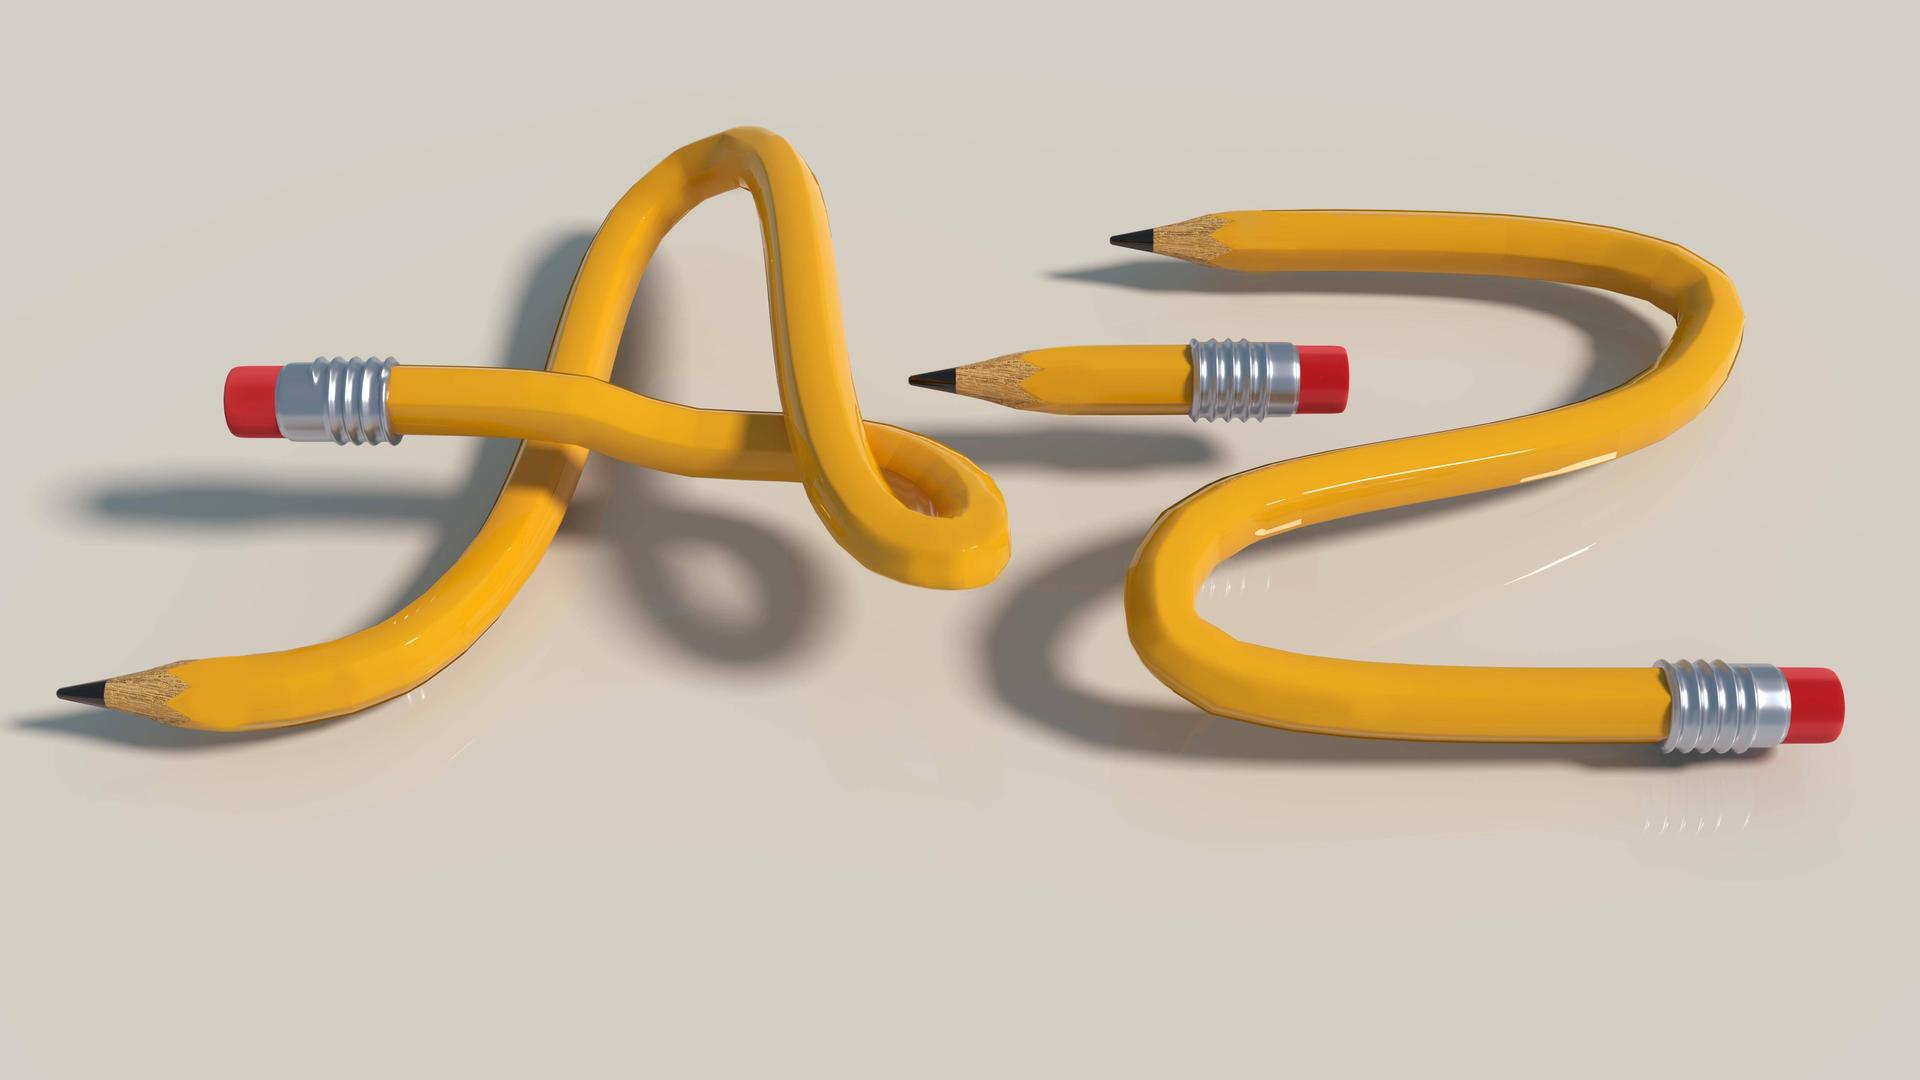 Bleistiftknoten von A bis Z aus drei gelben Bleistiften.